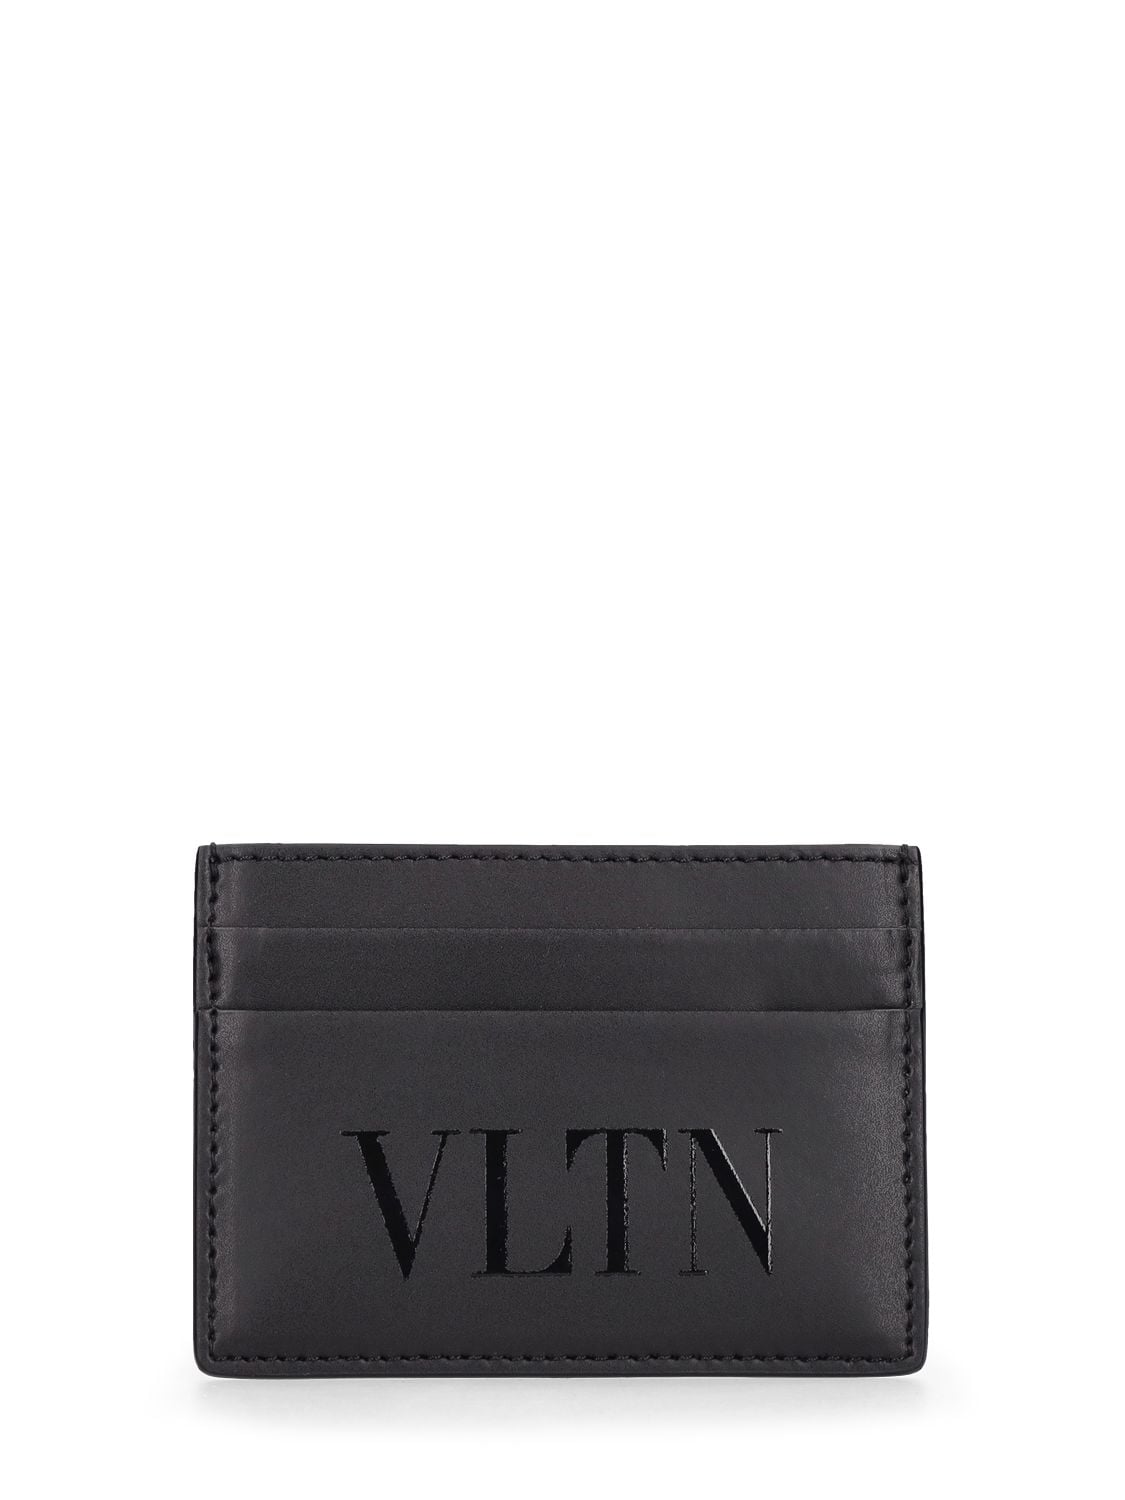 Image of Vltn Small Credit Card Holder